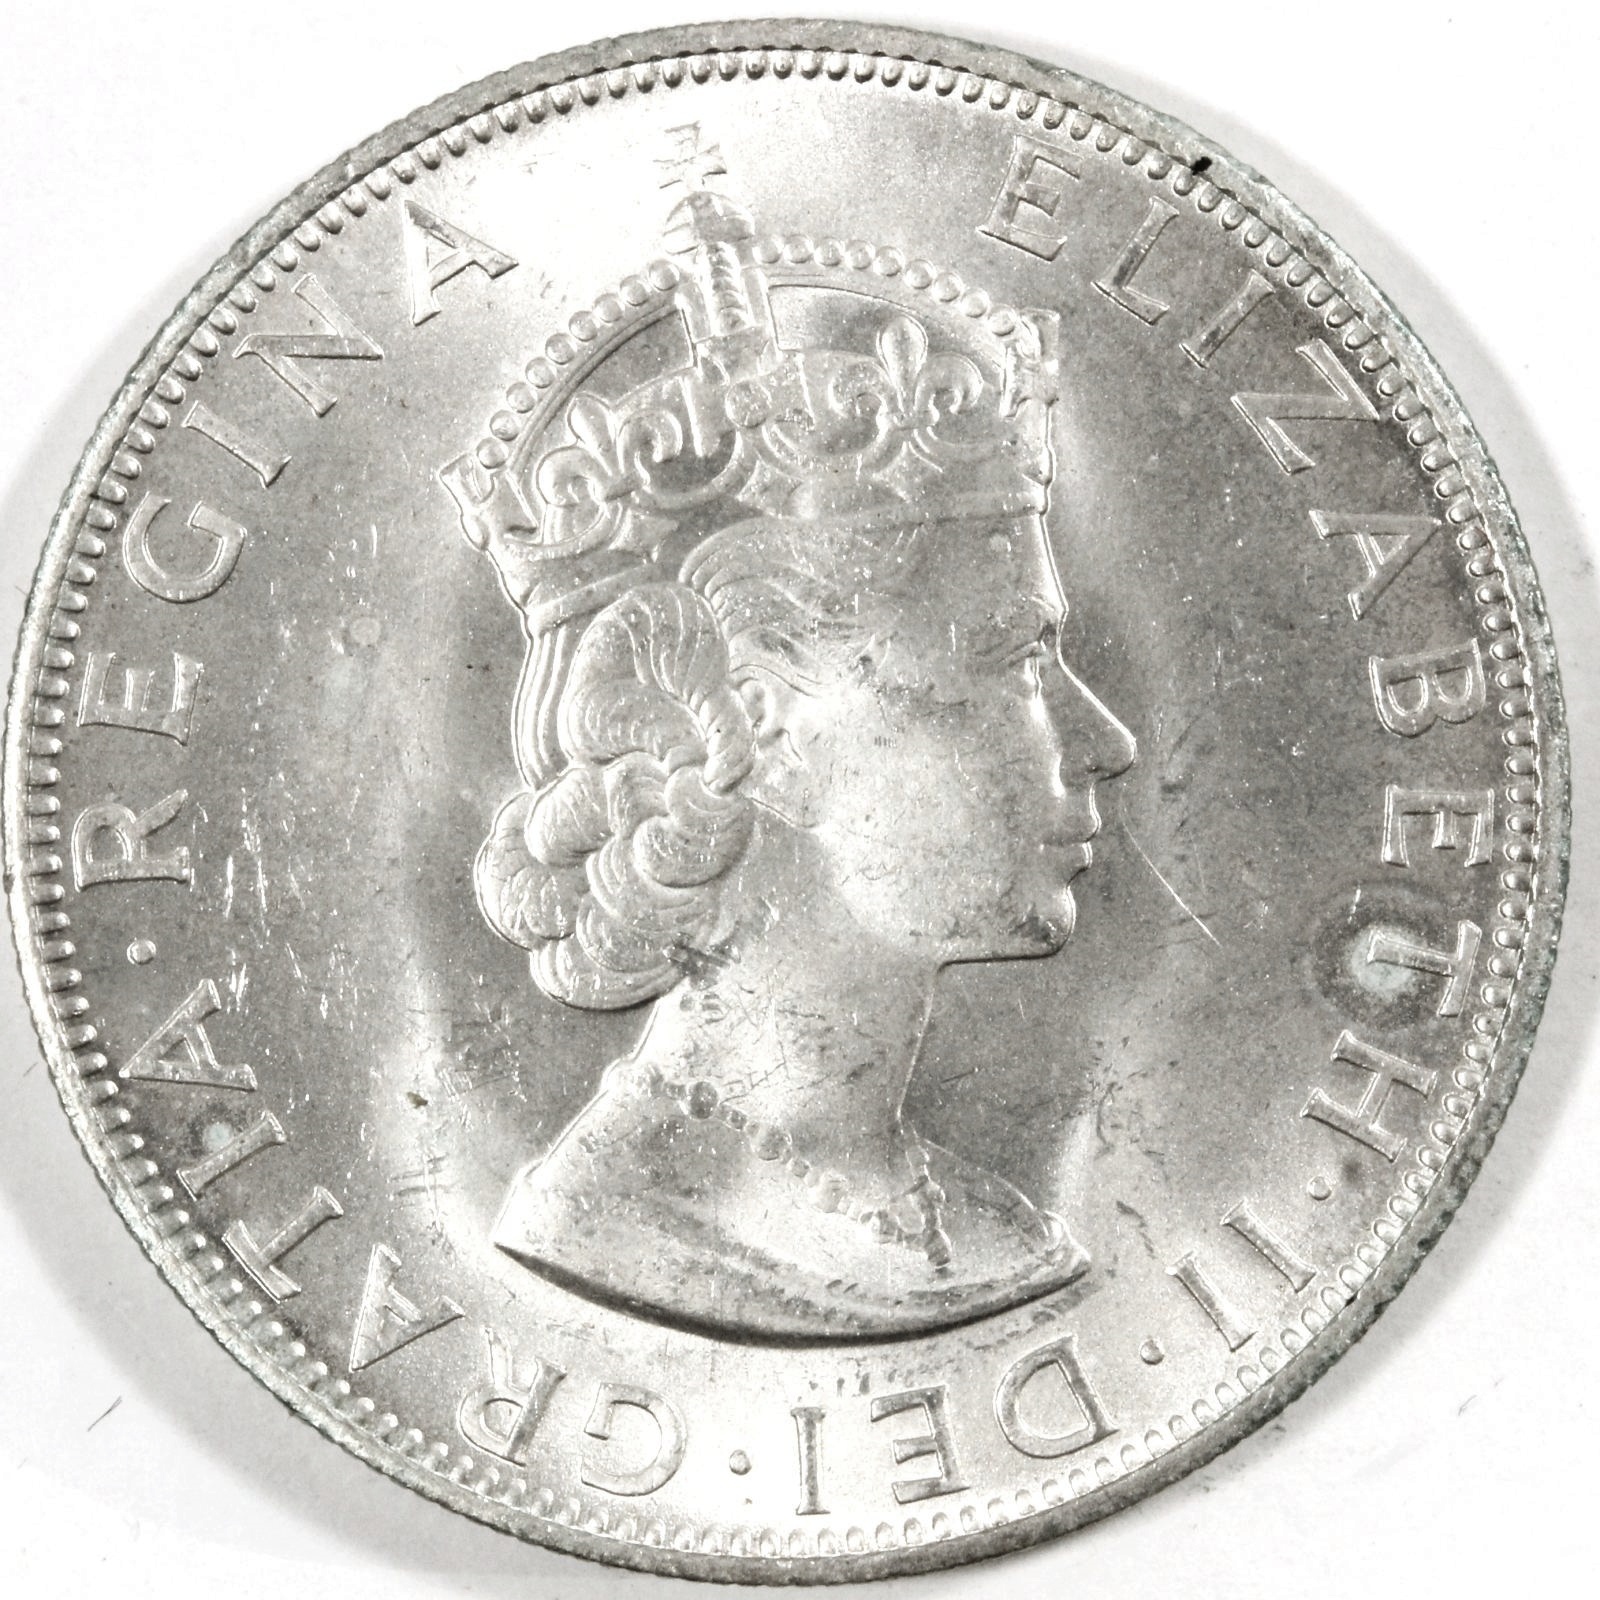 バミューダ諸島 1クラウン銀貨 1964年 エリザベス2世 コイン 古銭 | ミスターコインズ